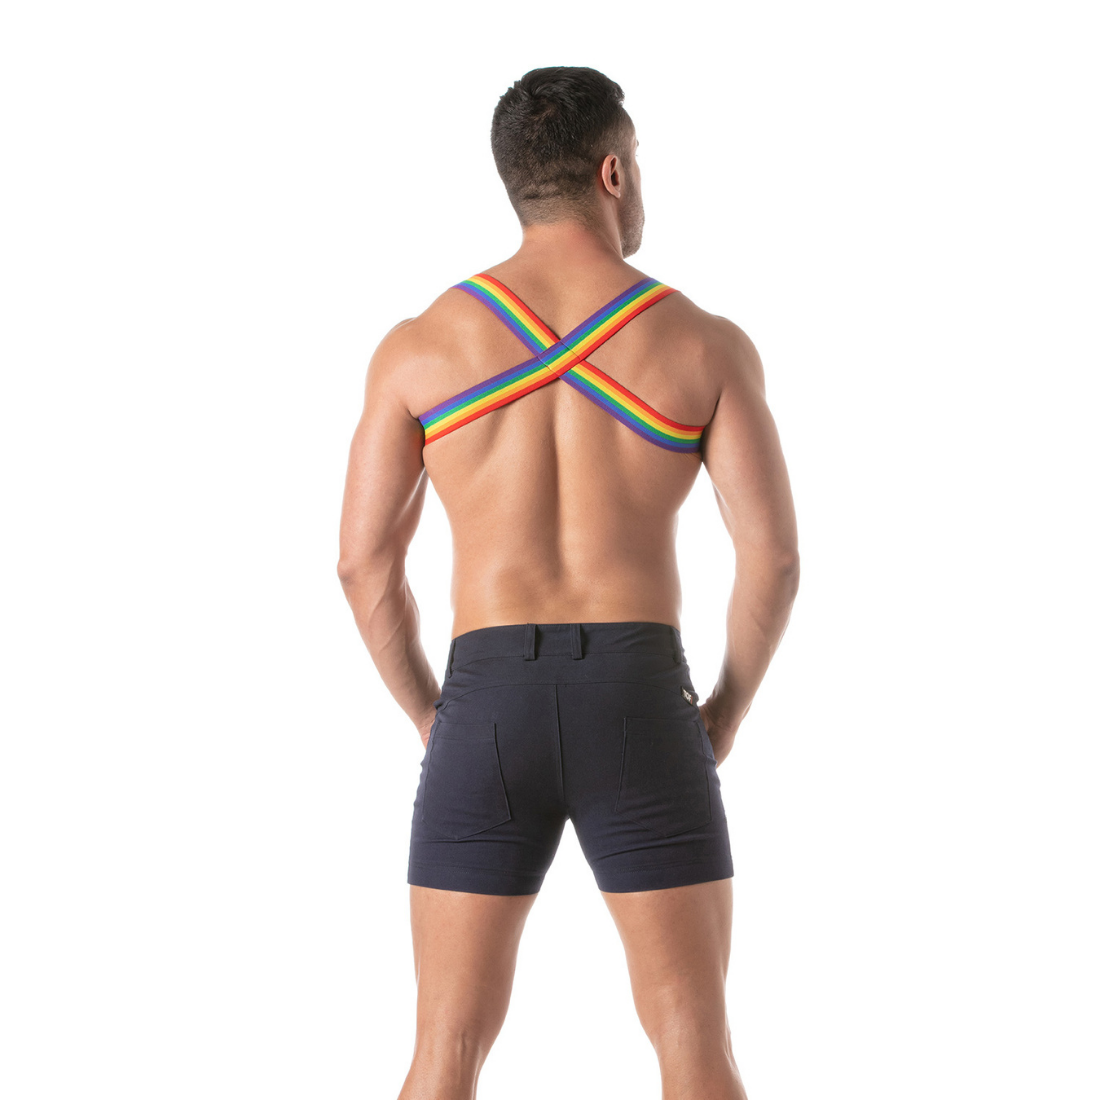 Regenboog Shoulder Harness van TOF Paris. Het perfecte Gay Pride accessoire voor mannen en te koop bij Flavourez.